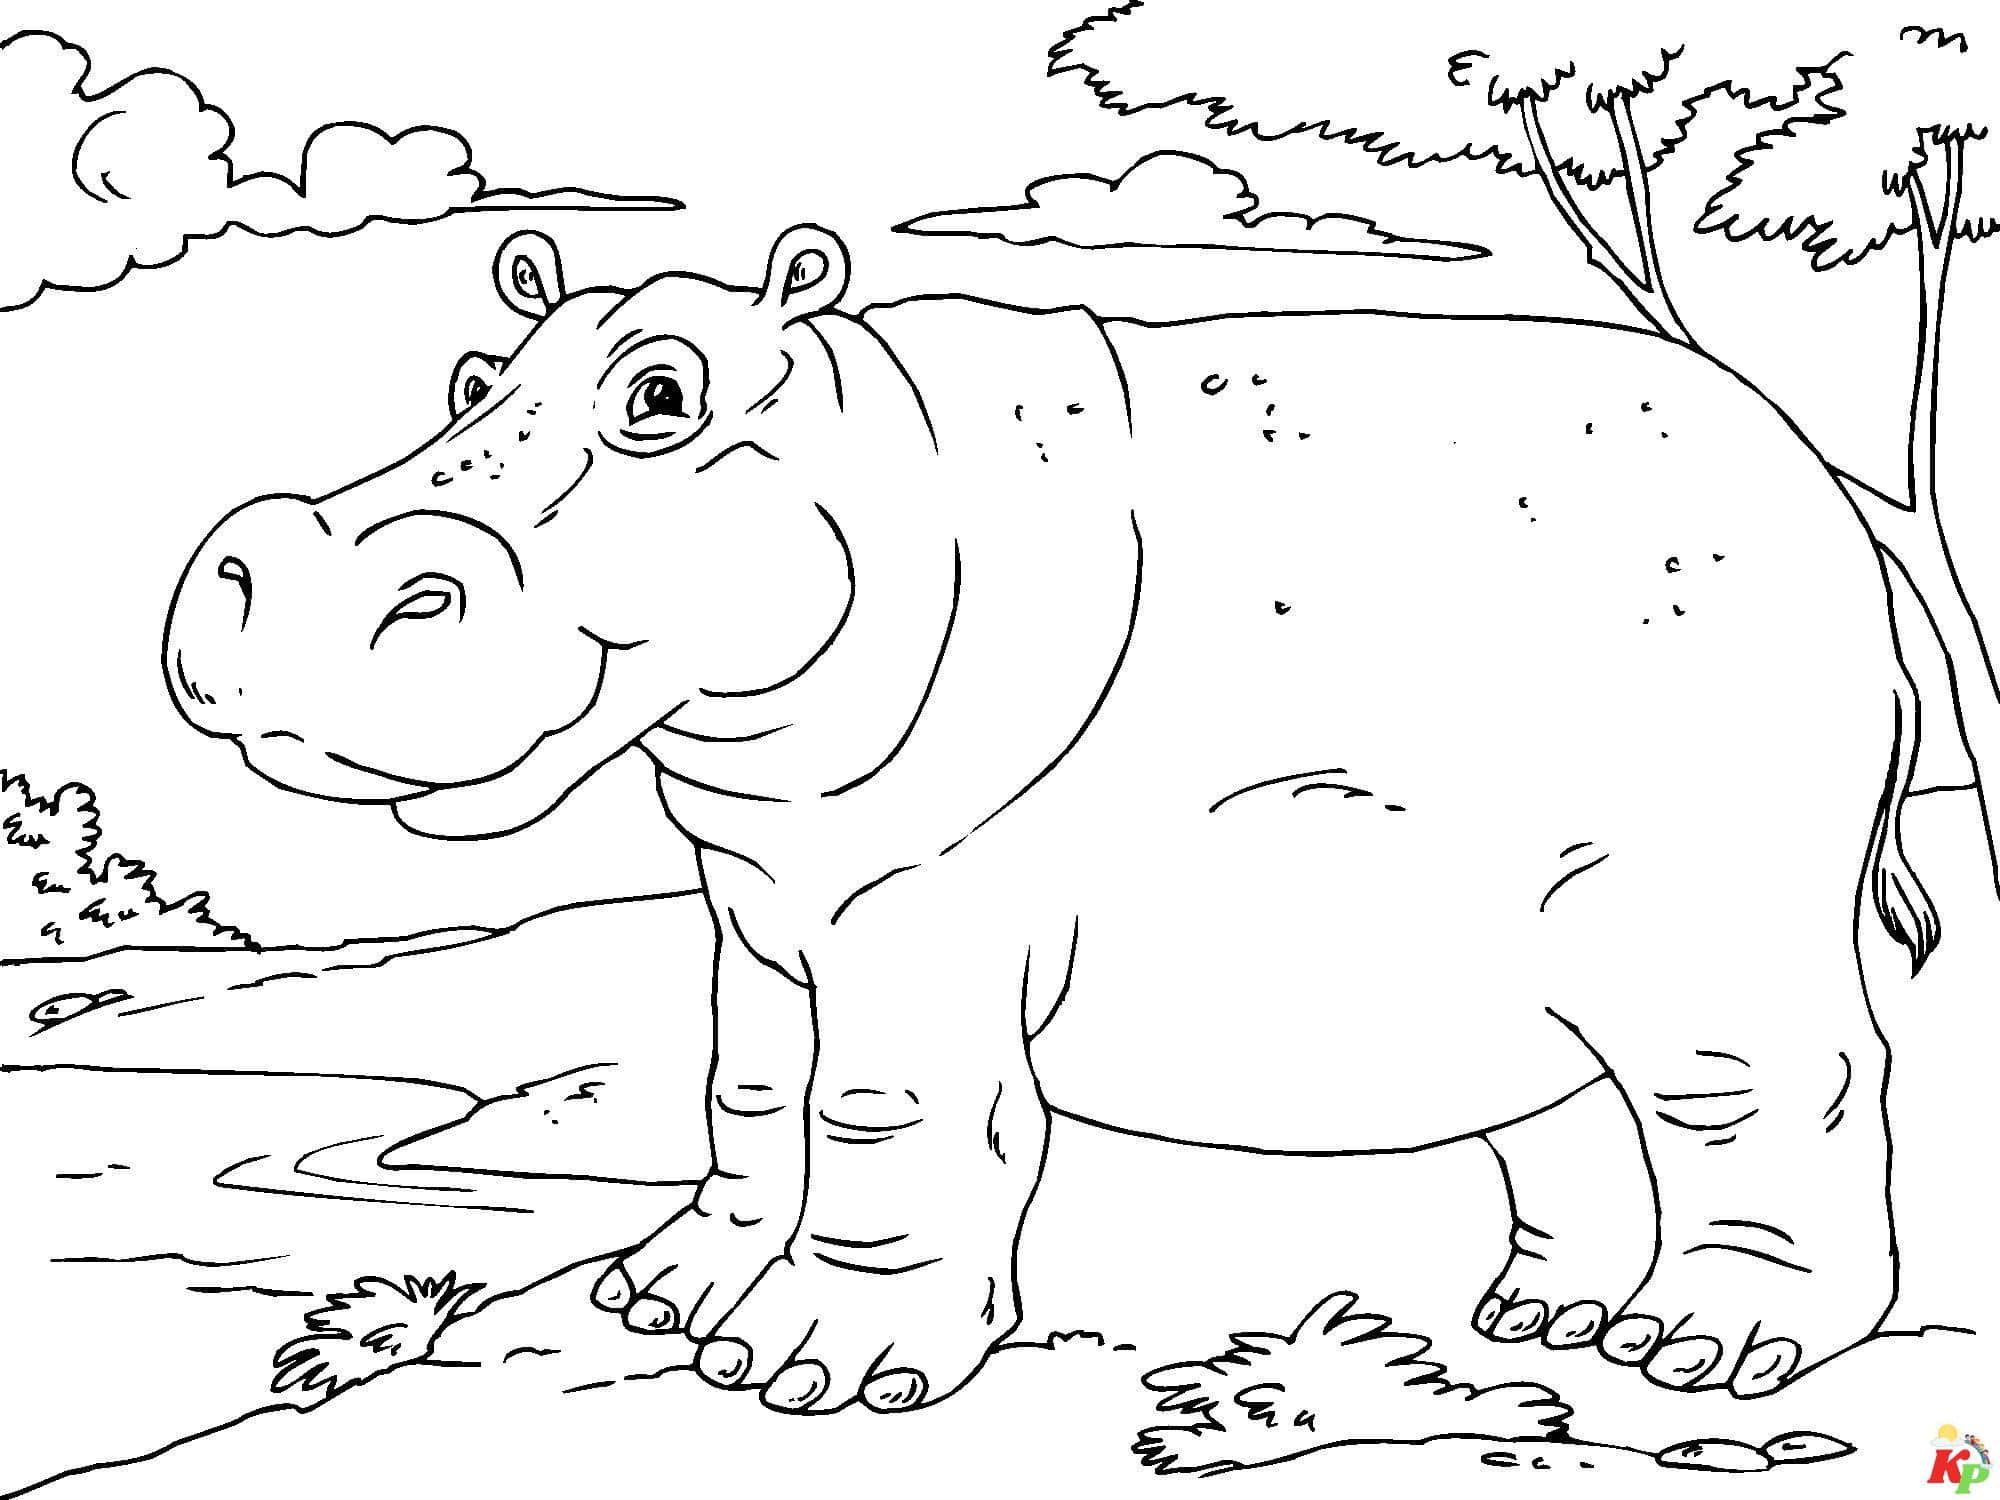 Nijlpaard (6)